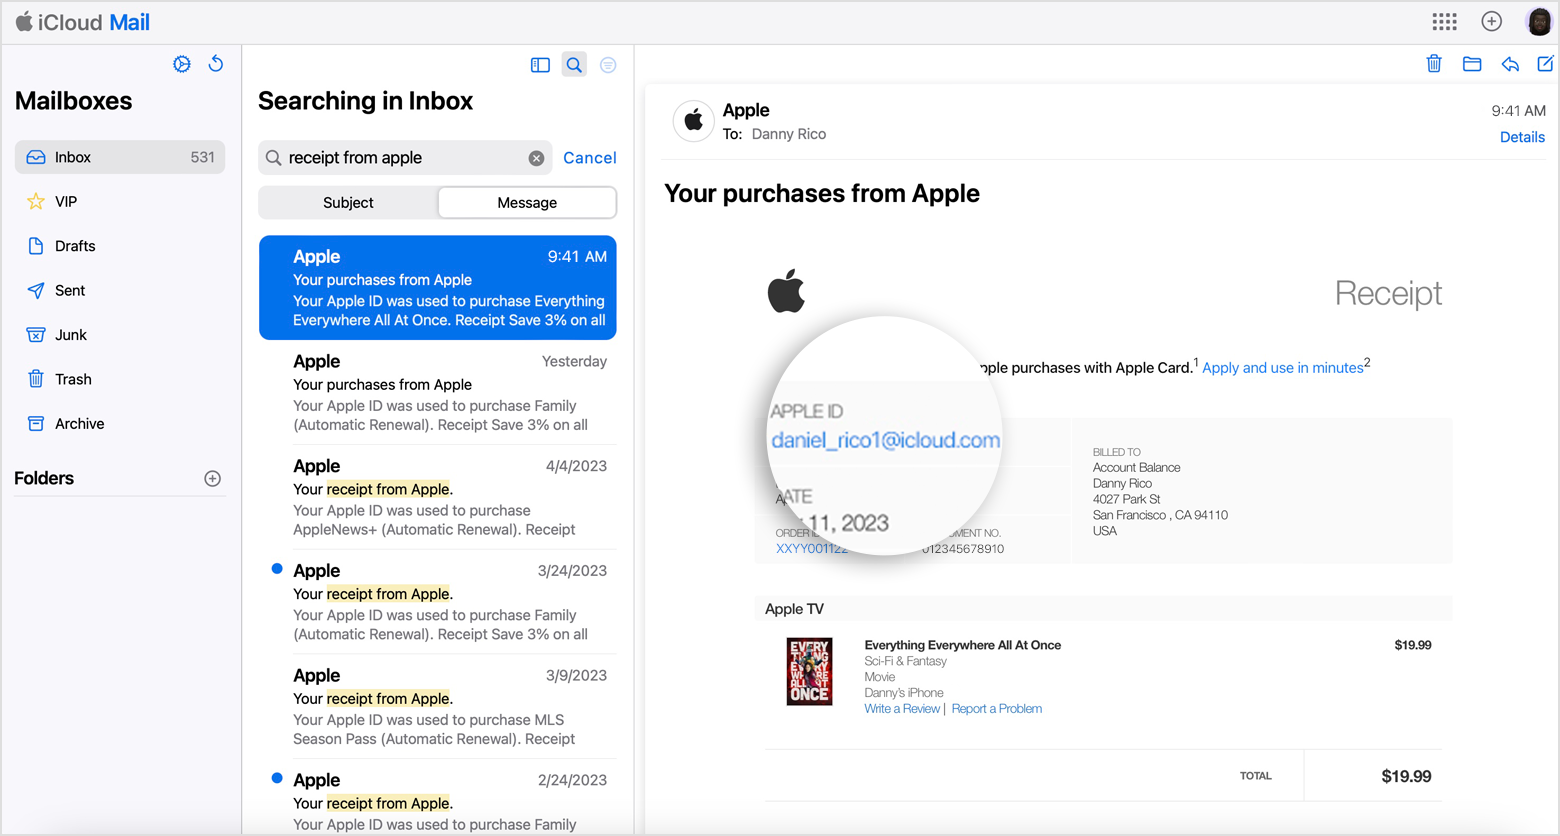 E-mailová faktura, která uvádí Apple ID použité k nákupu u Apple.